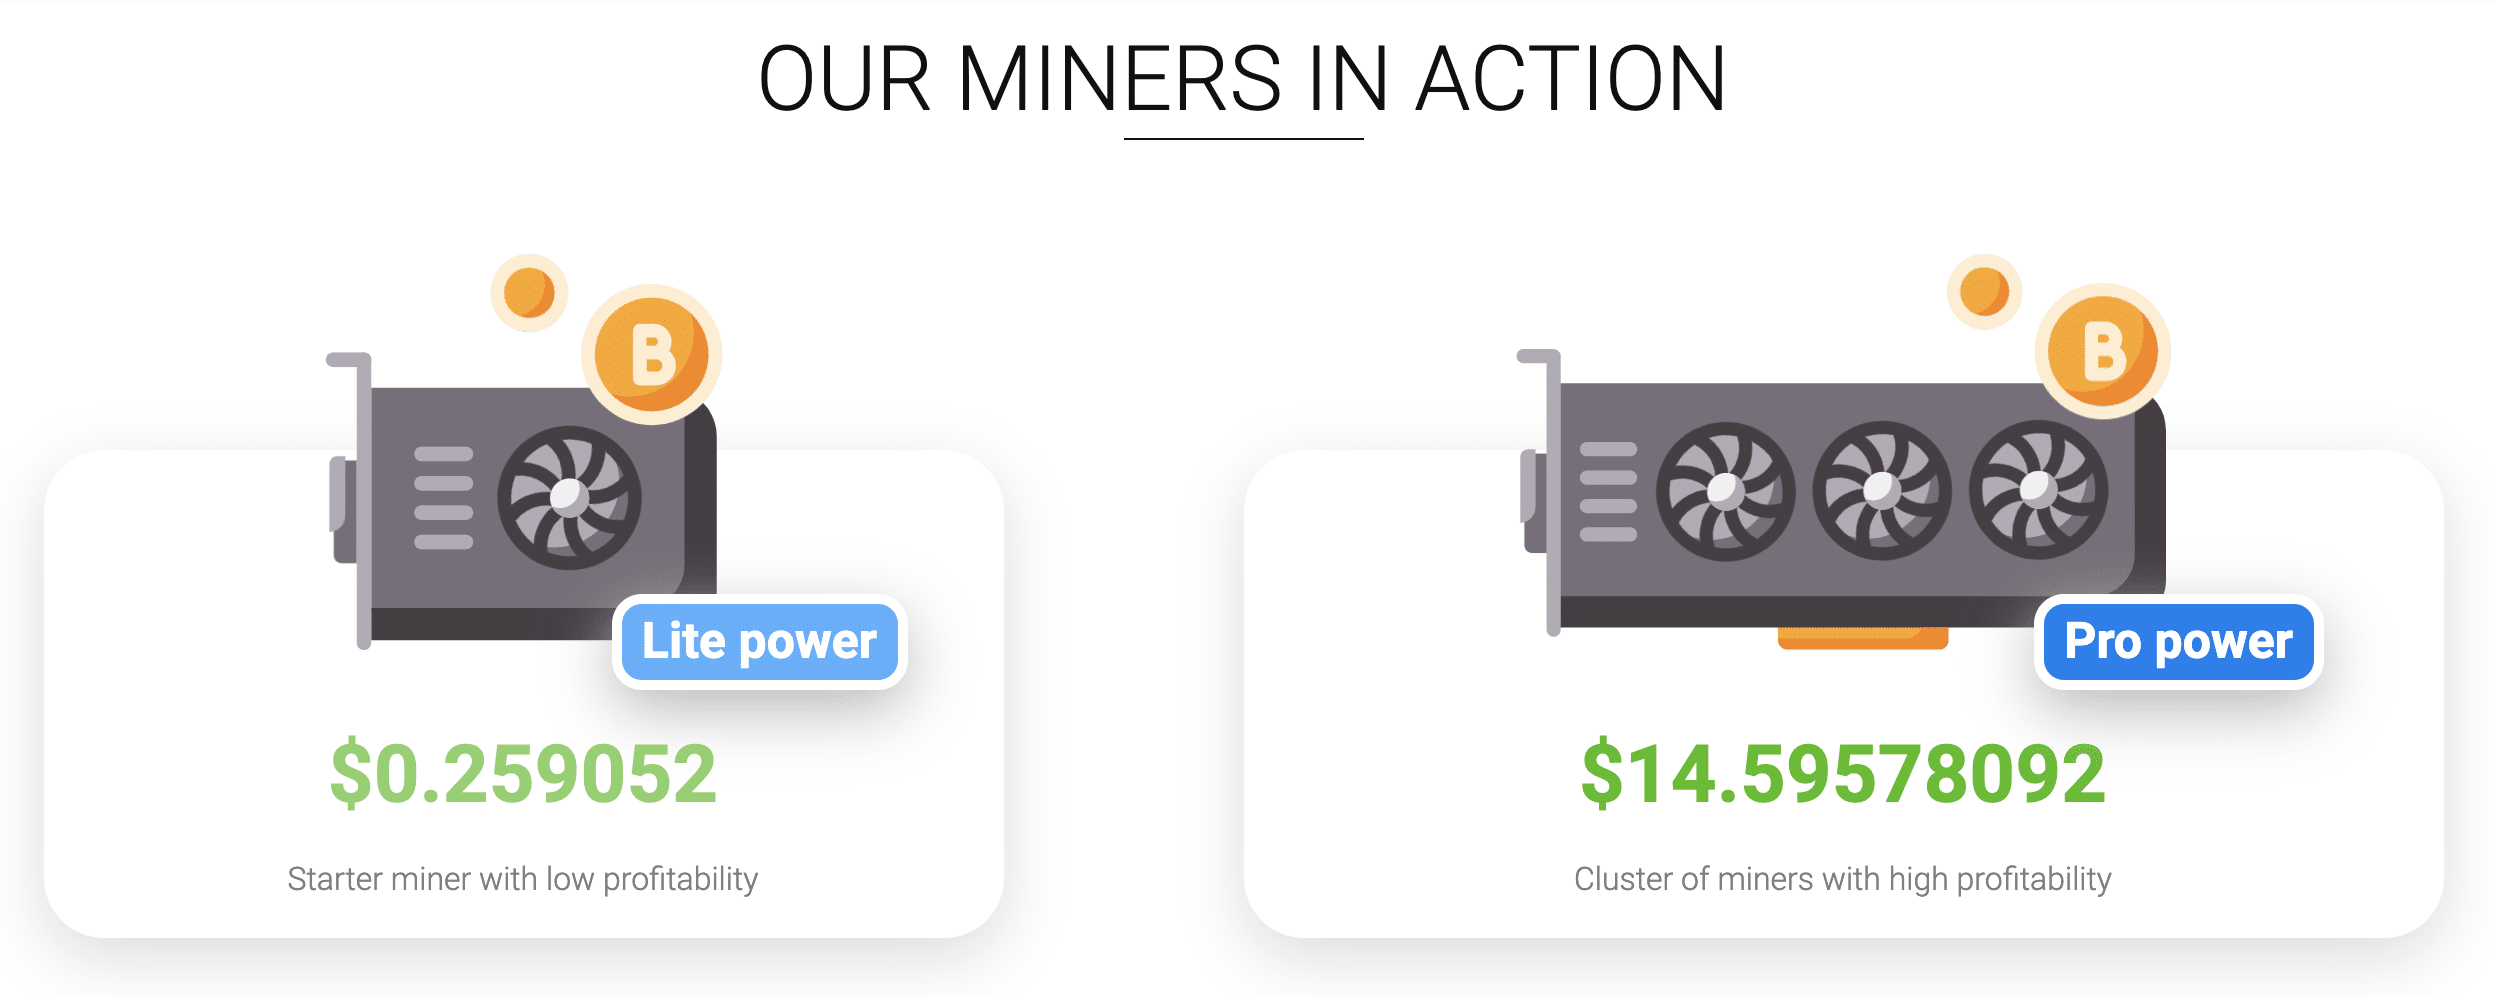 Shamining miners